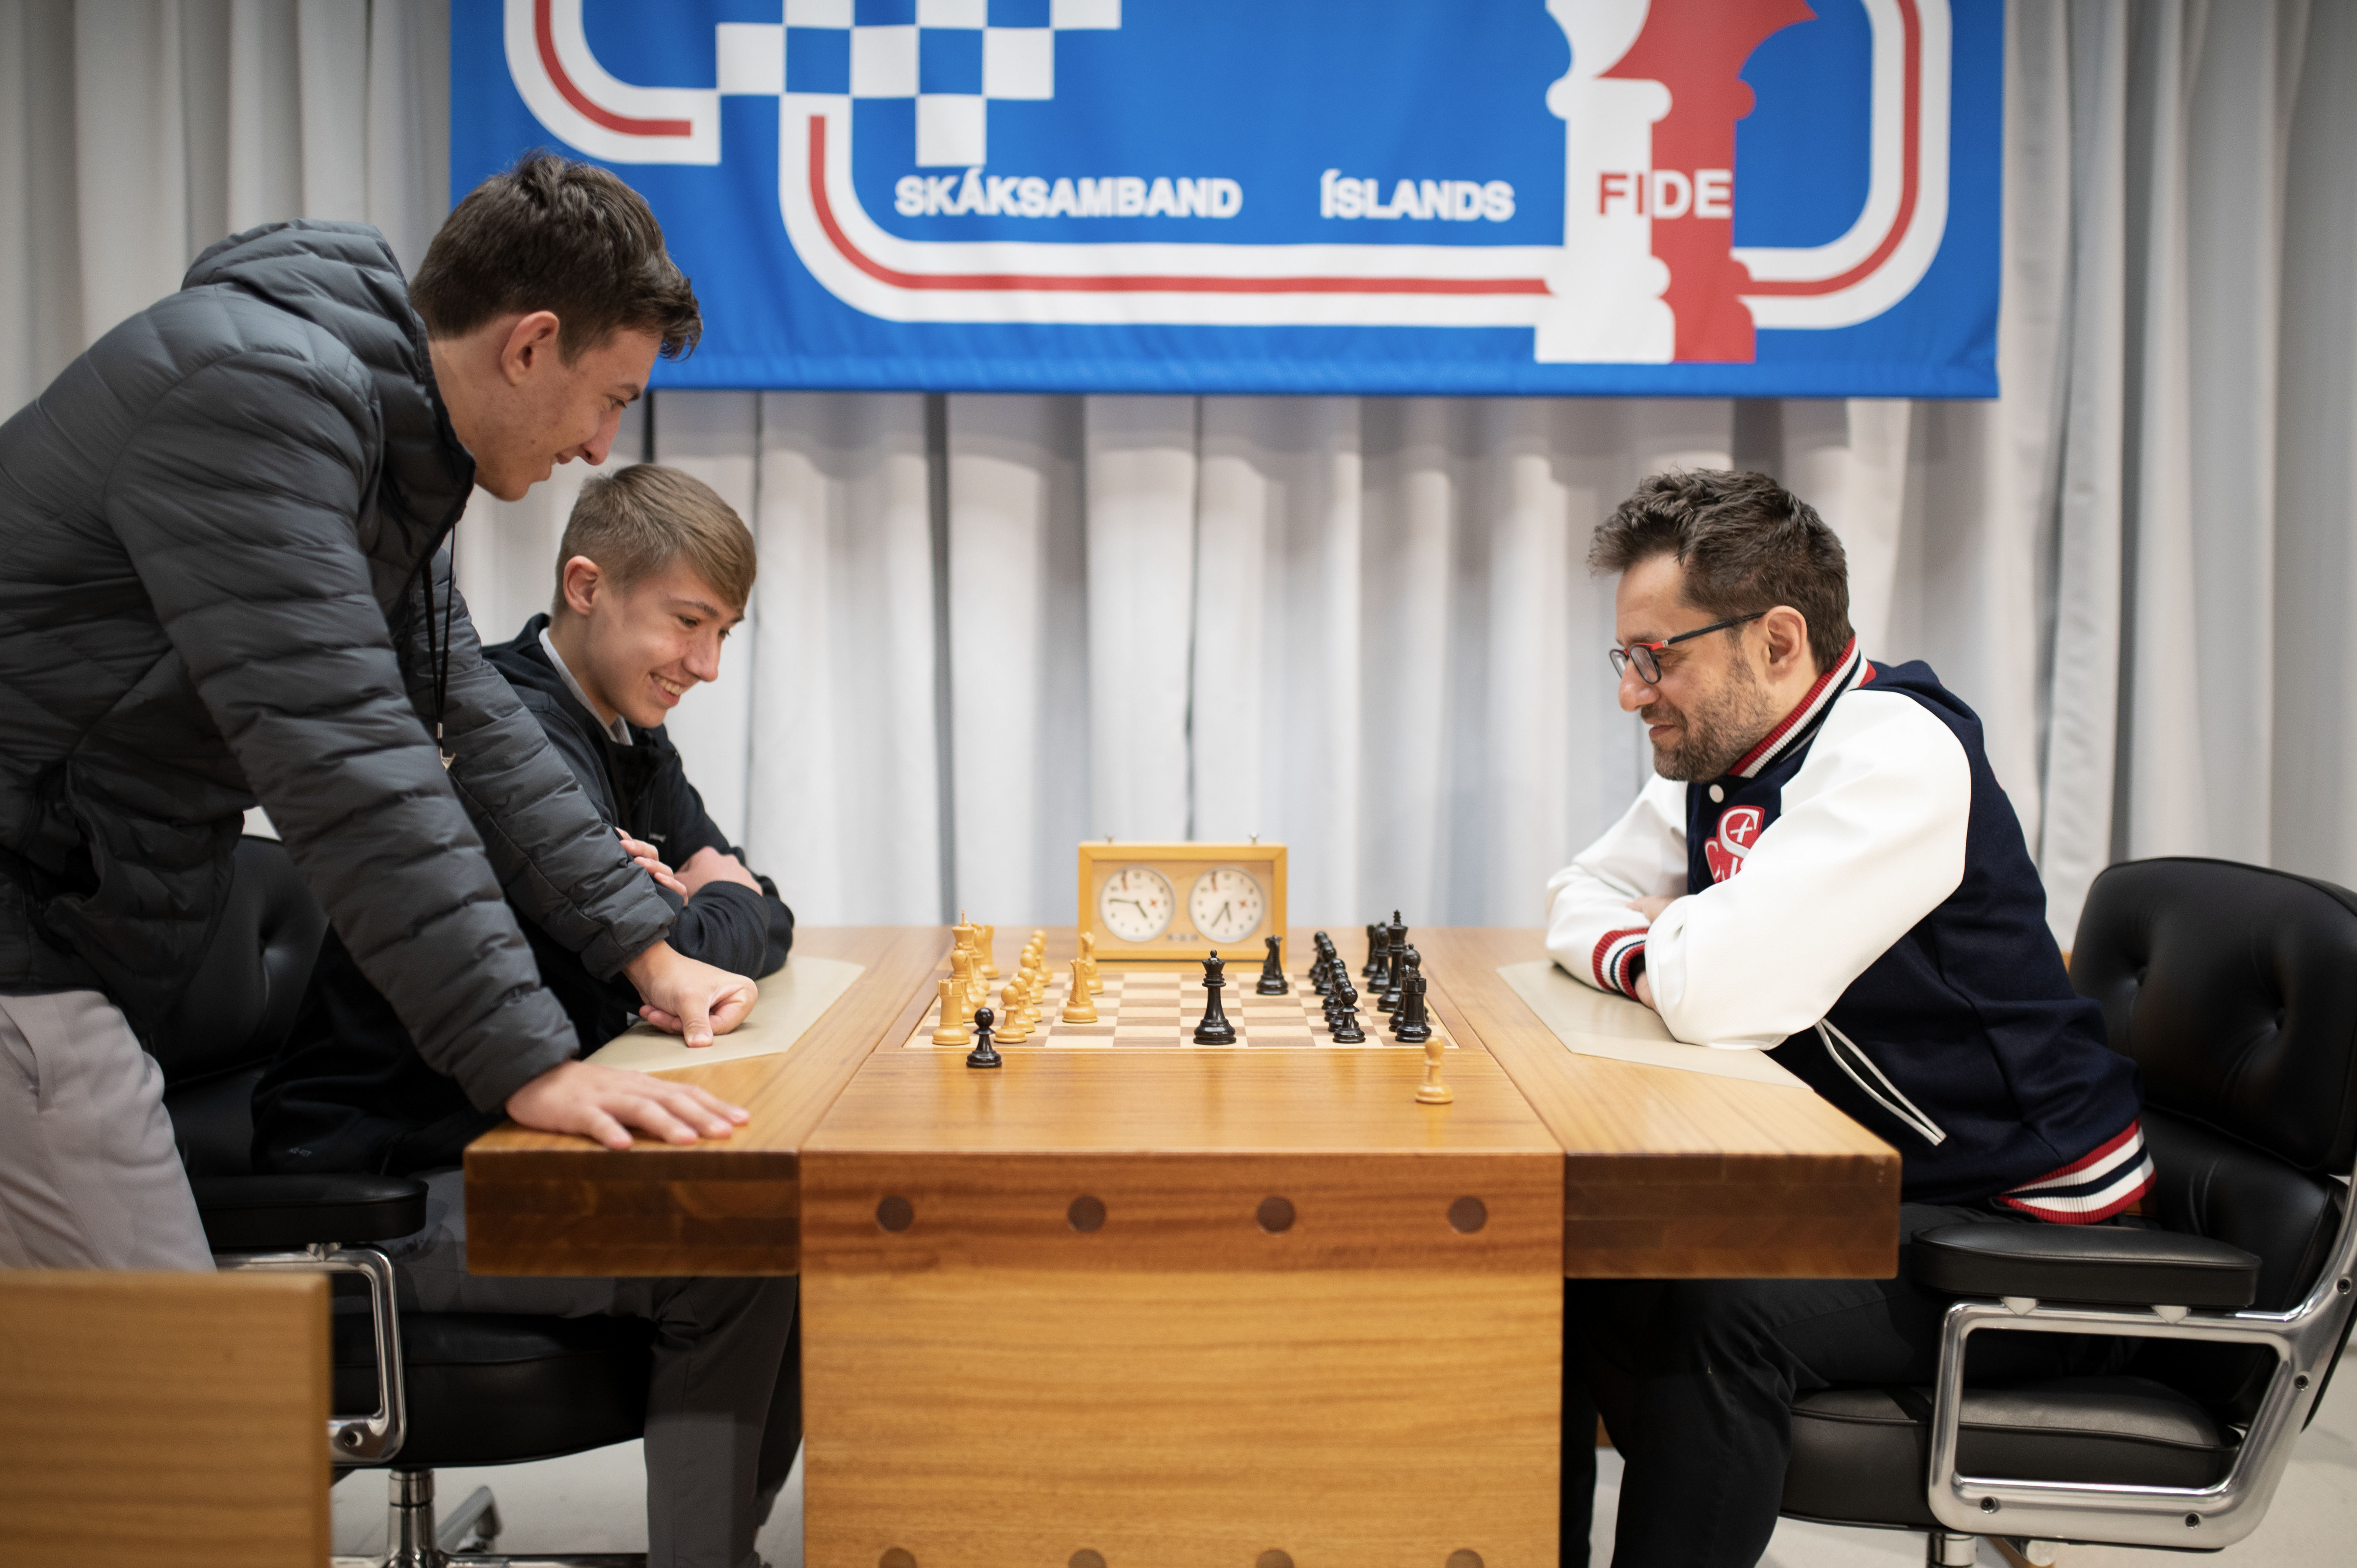 Denver Chess Club  John Brezina's Report from Madrid